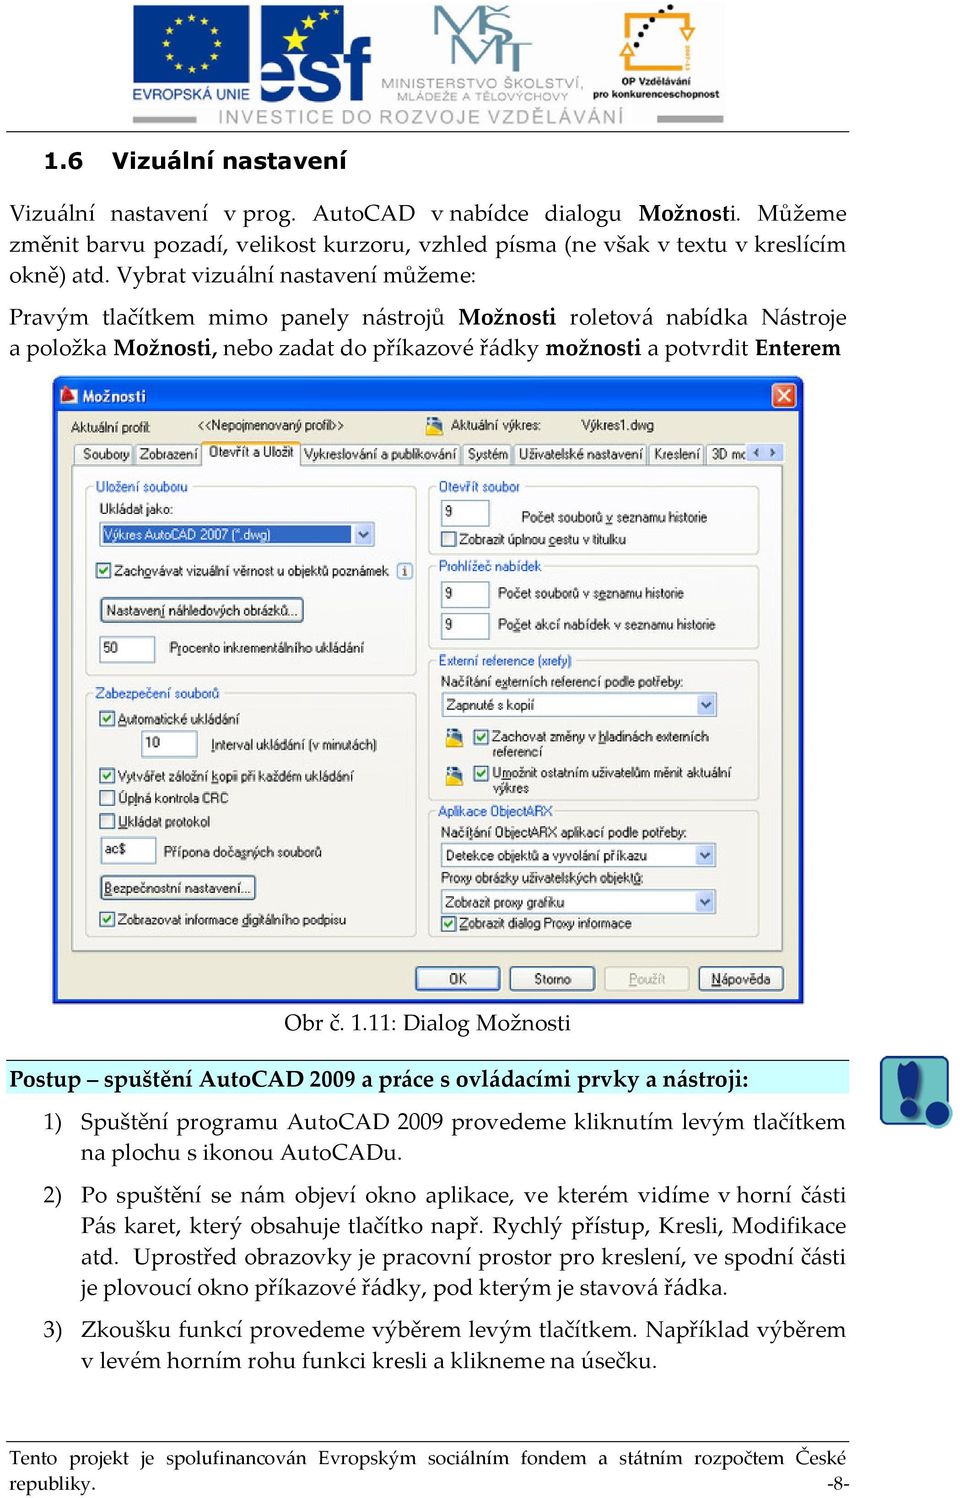 11: Dialog Možnosti Postup spuštění AutoCAD 2009 a práce s ovládacími prvky a nástroji: 1) Spuštění programu AutoCAD 2009 provedeme kliknutím levým tlačítkem na plochu s ikonou AutoCADu.